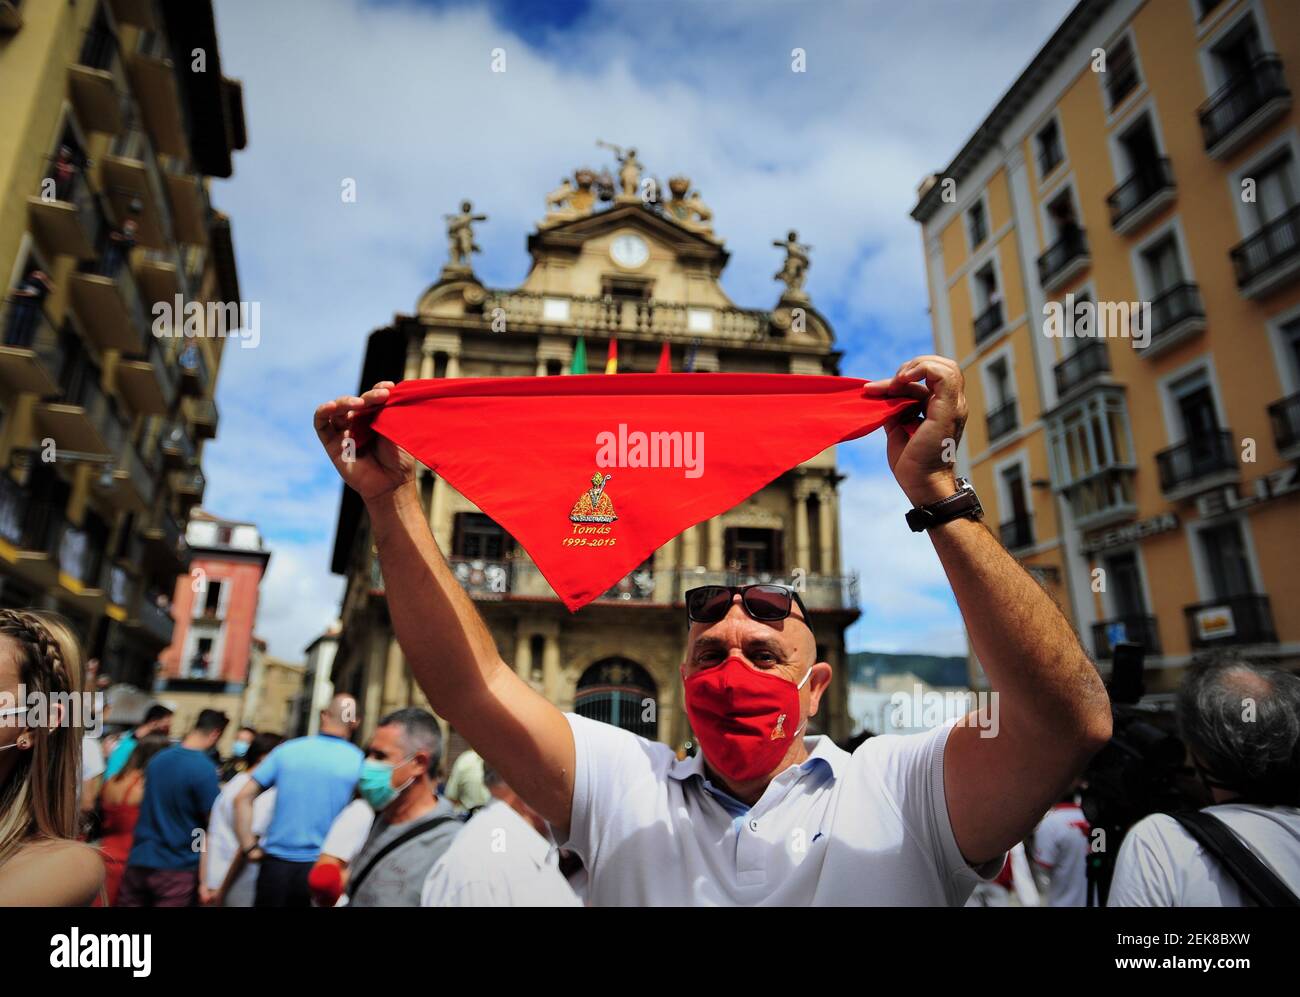 Un homme tient un foulard rouge sur la place de l'hôtel de ville de  Pampelune. Les habitants de la ville espagnole de Pamplona, dans le nord de  l'Espagne, vêtus de vêtements blancs